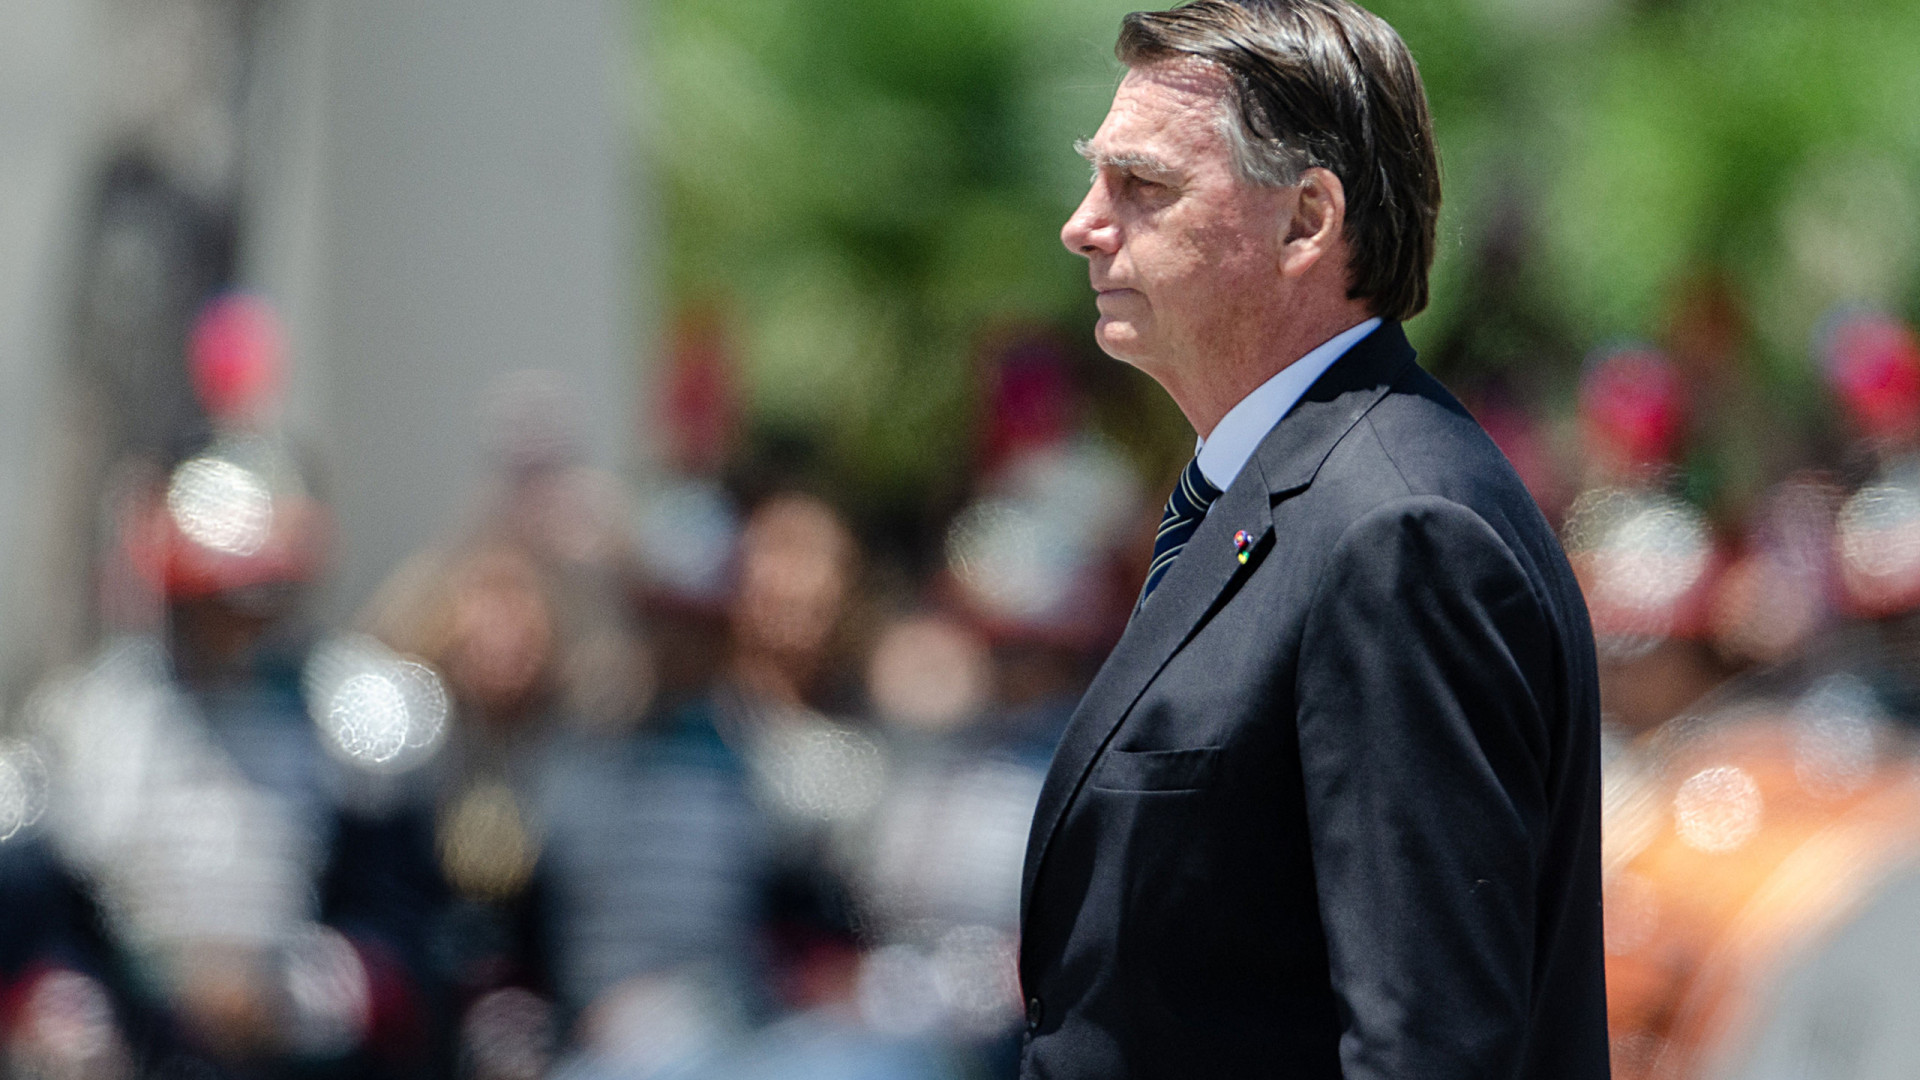 Julgamento de Bolsonaro no TSE: datas, qual a acusação e outras dúvidas respondidas